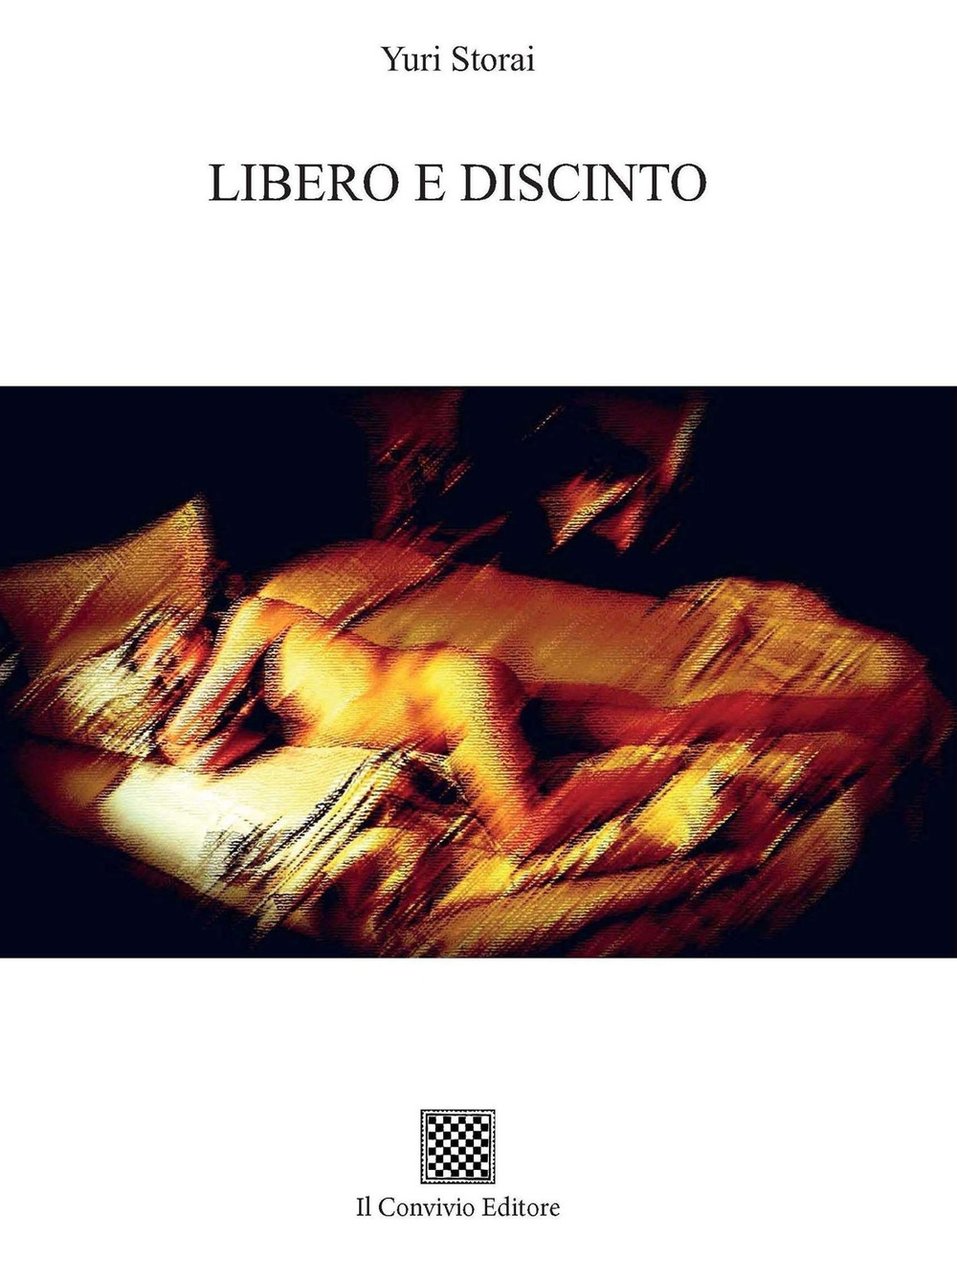 Libero e Discinto, Castiglione di Sicilia, Il Convivio Editore, 2021